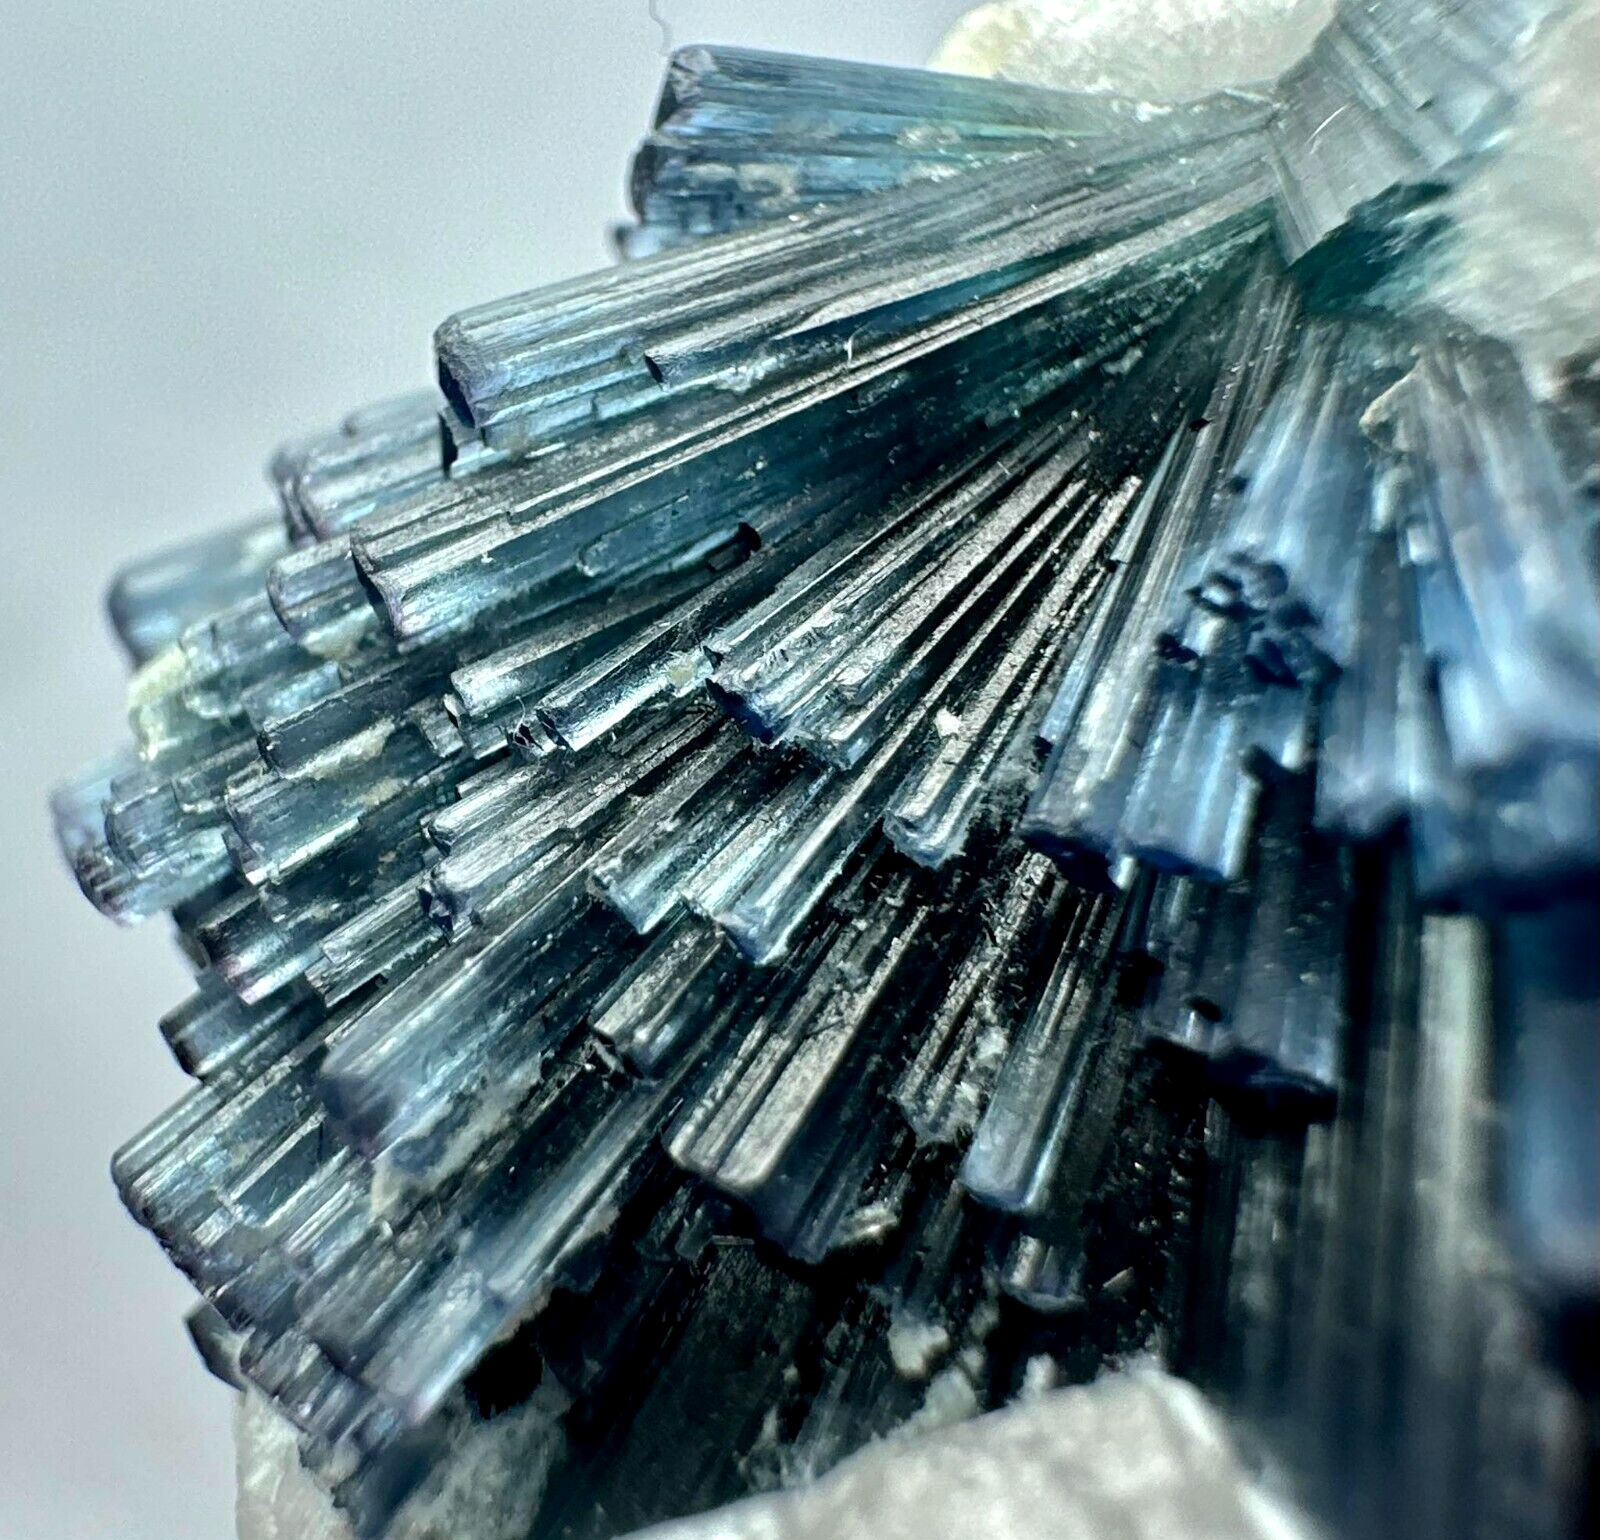 91 Carat EXTRAORDINARY Indicolite Tourmaline Crystals Bunch, Apatite, Mica @Afg